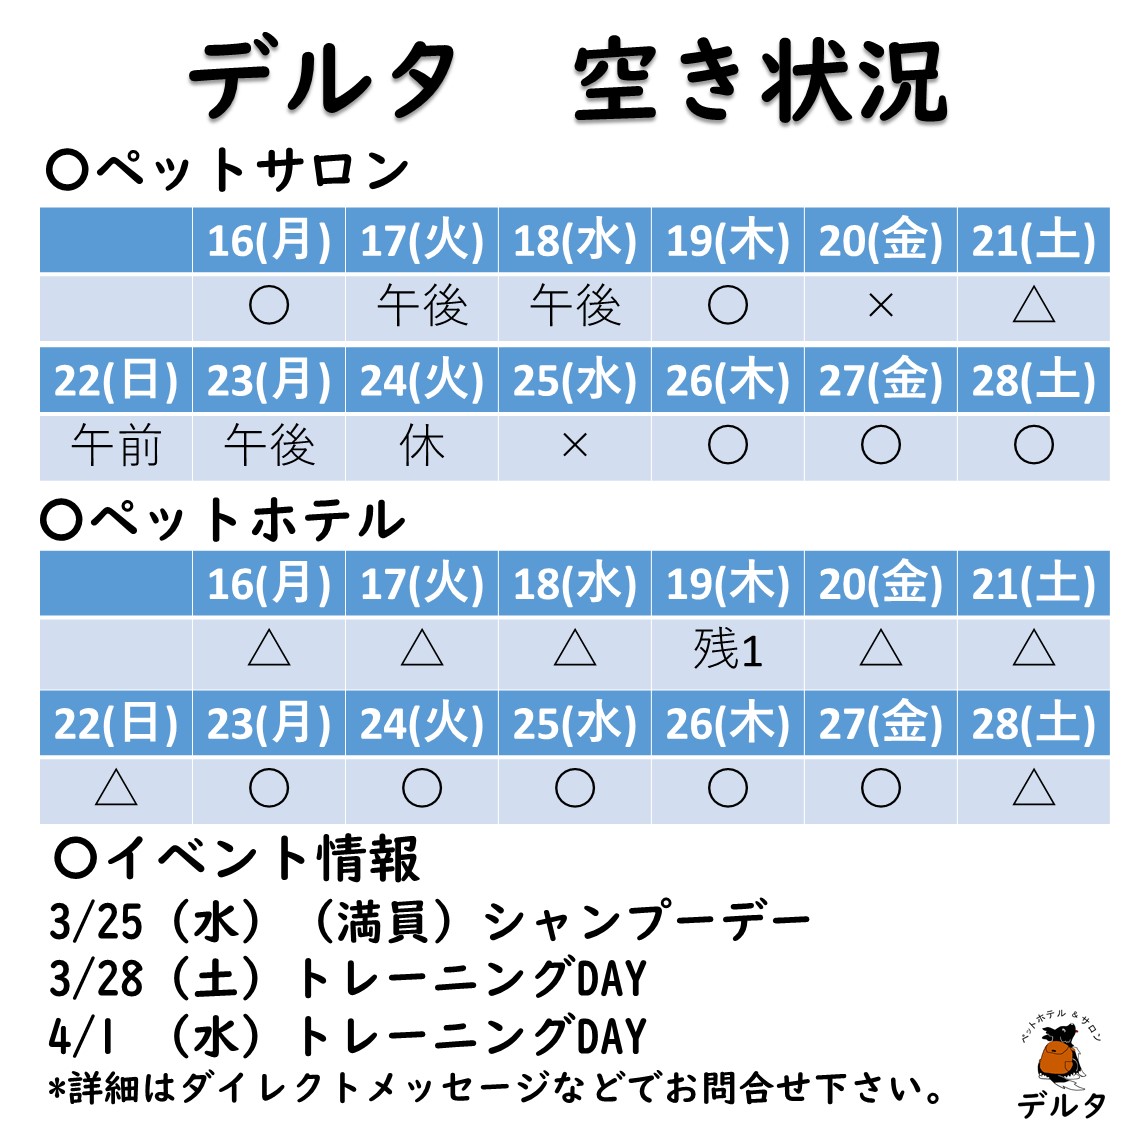 【最新の空き状況】3/16(月)-3/28(土)